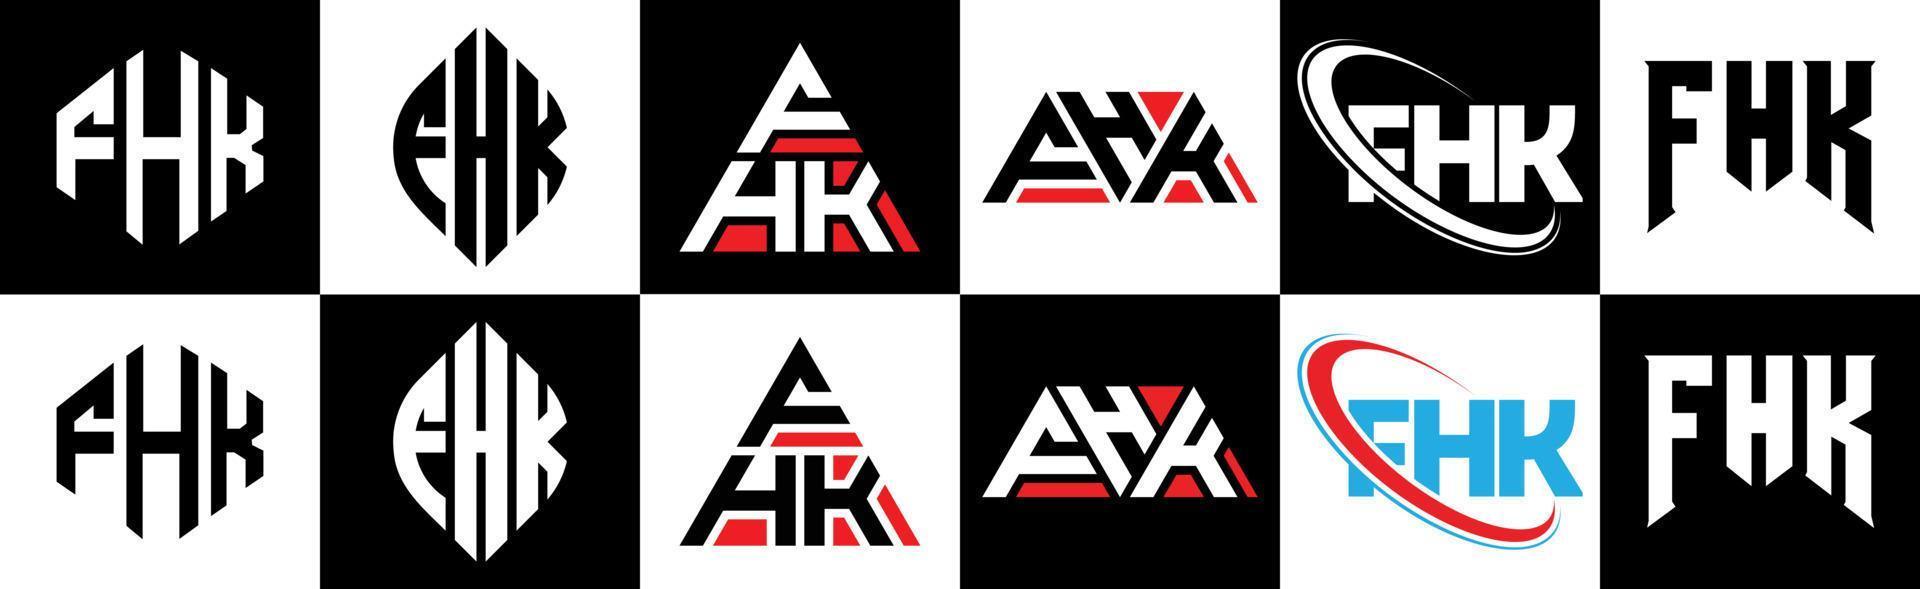 fhk-Buchstaben-Logo-Design in sechs Stilen. fhk polygon, kreis, dreieck, sechseck, flacher und einfacher stil mit schwarz-weißem buchstabenlogo in einer zeichenfläche. fhk minimalistisches und klassisches logo vektor